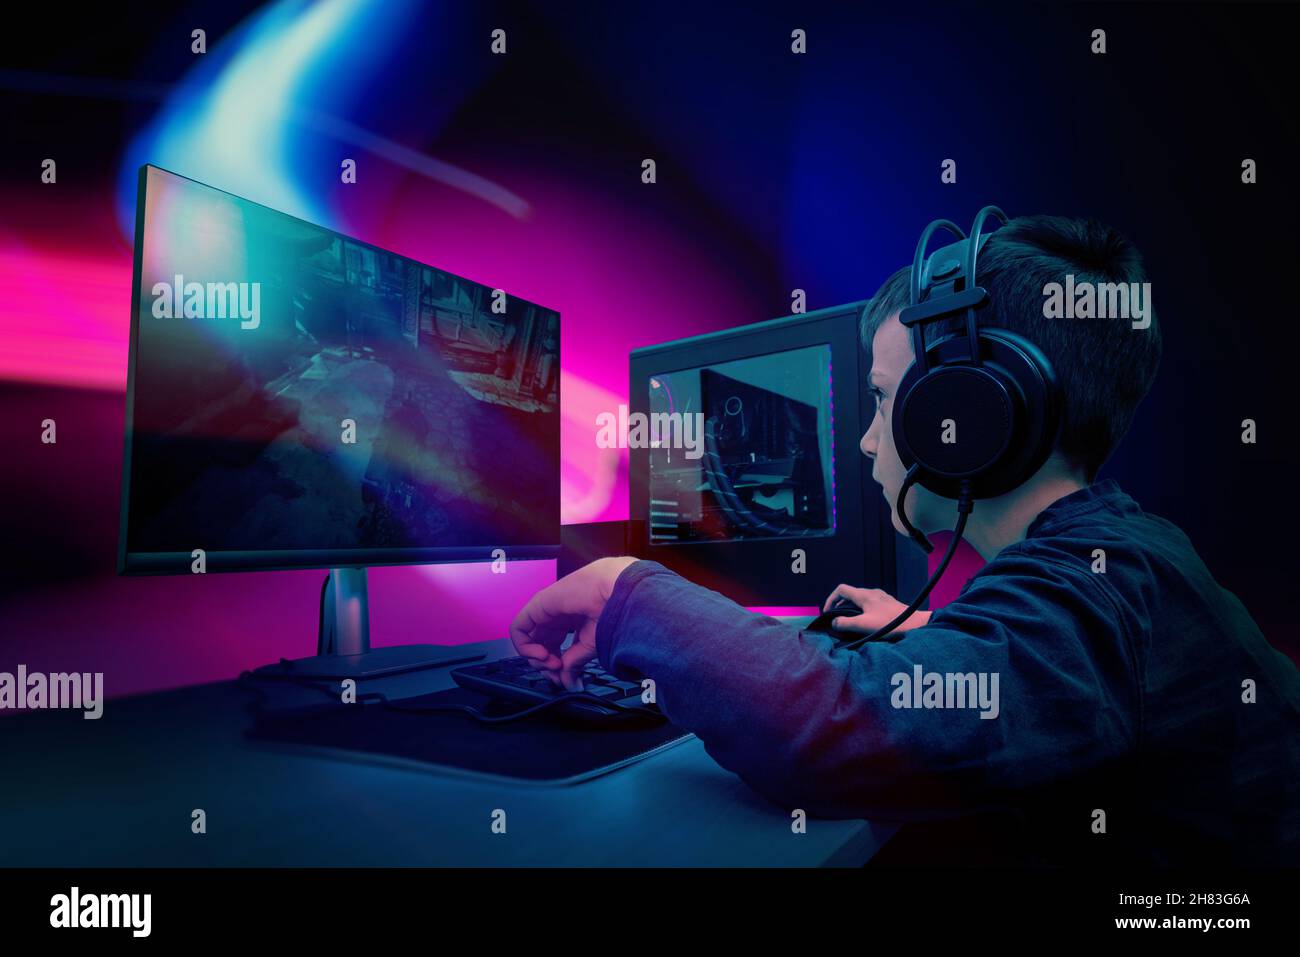 Junge Spieler spielen Spiel auf Gaming-Computer. Rosa und blaue LED-Lichter im Hintergrund Stockfoto